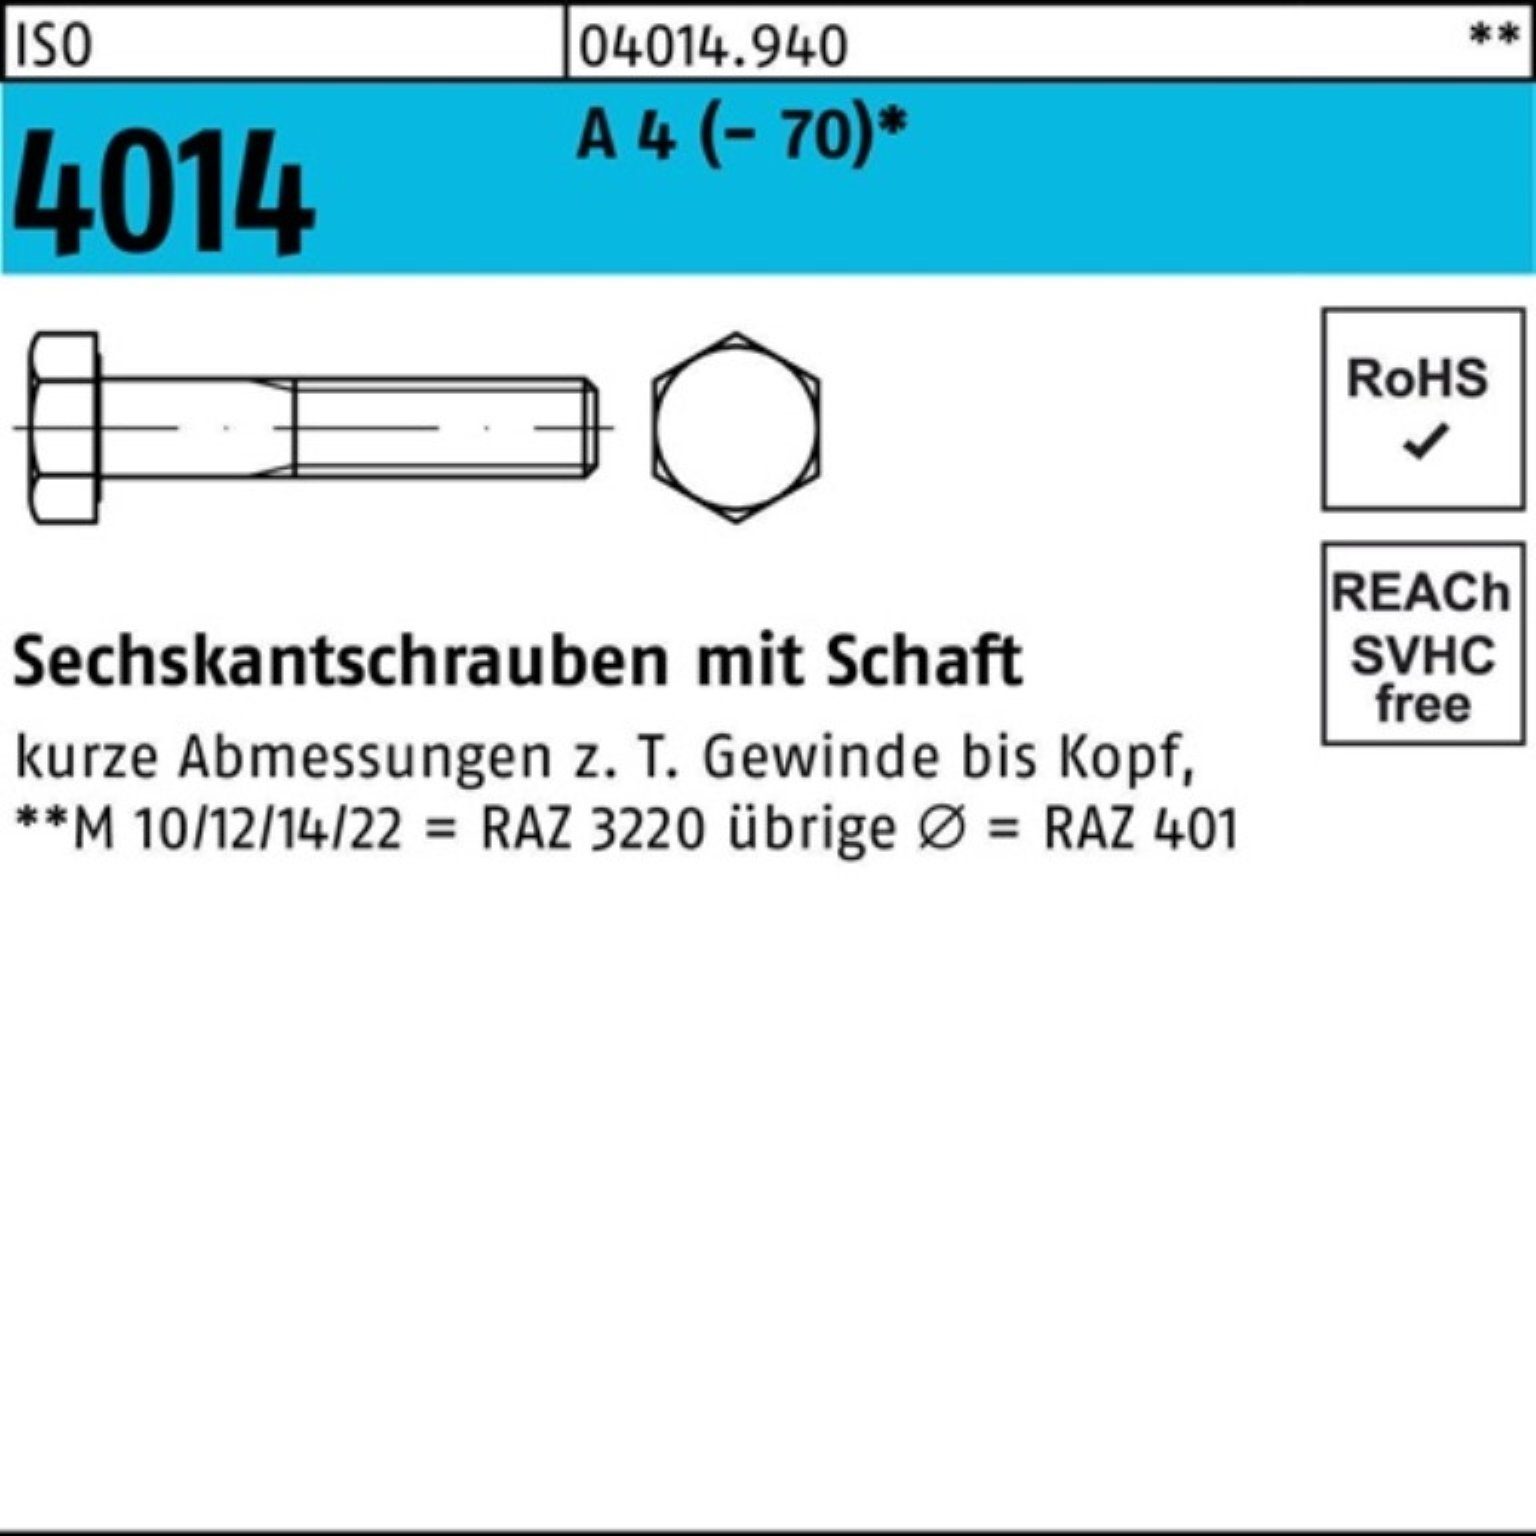 Bufab Sechskantschraube 100er Pack Sechskantschraube ISO 4014 Schaft M16x 80 A 4 (70) 25 St